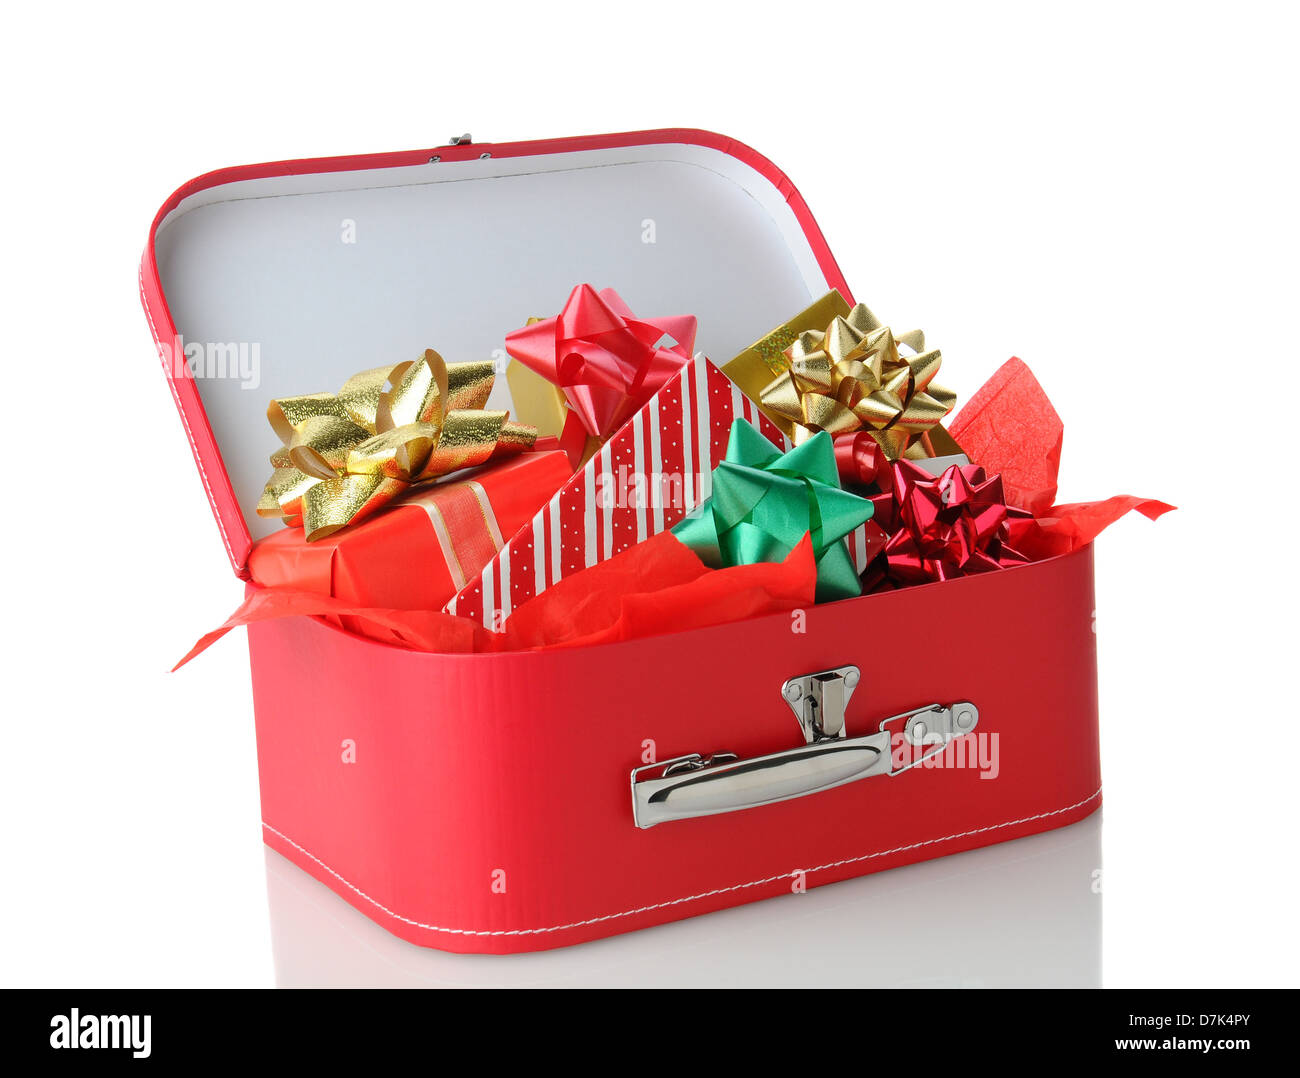 Nahaufnahme von einem roten Koffer voller verpackte Geschenke. Querformat  auf einem weißen Hintergrund mit Reflexion Stockfotografie - Alamy